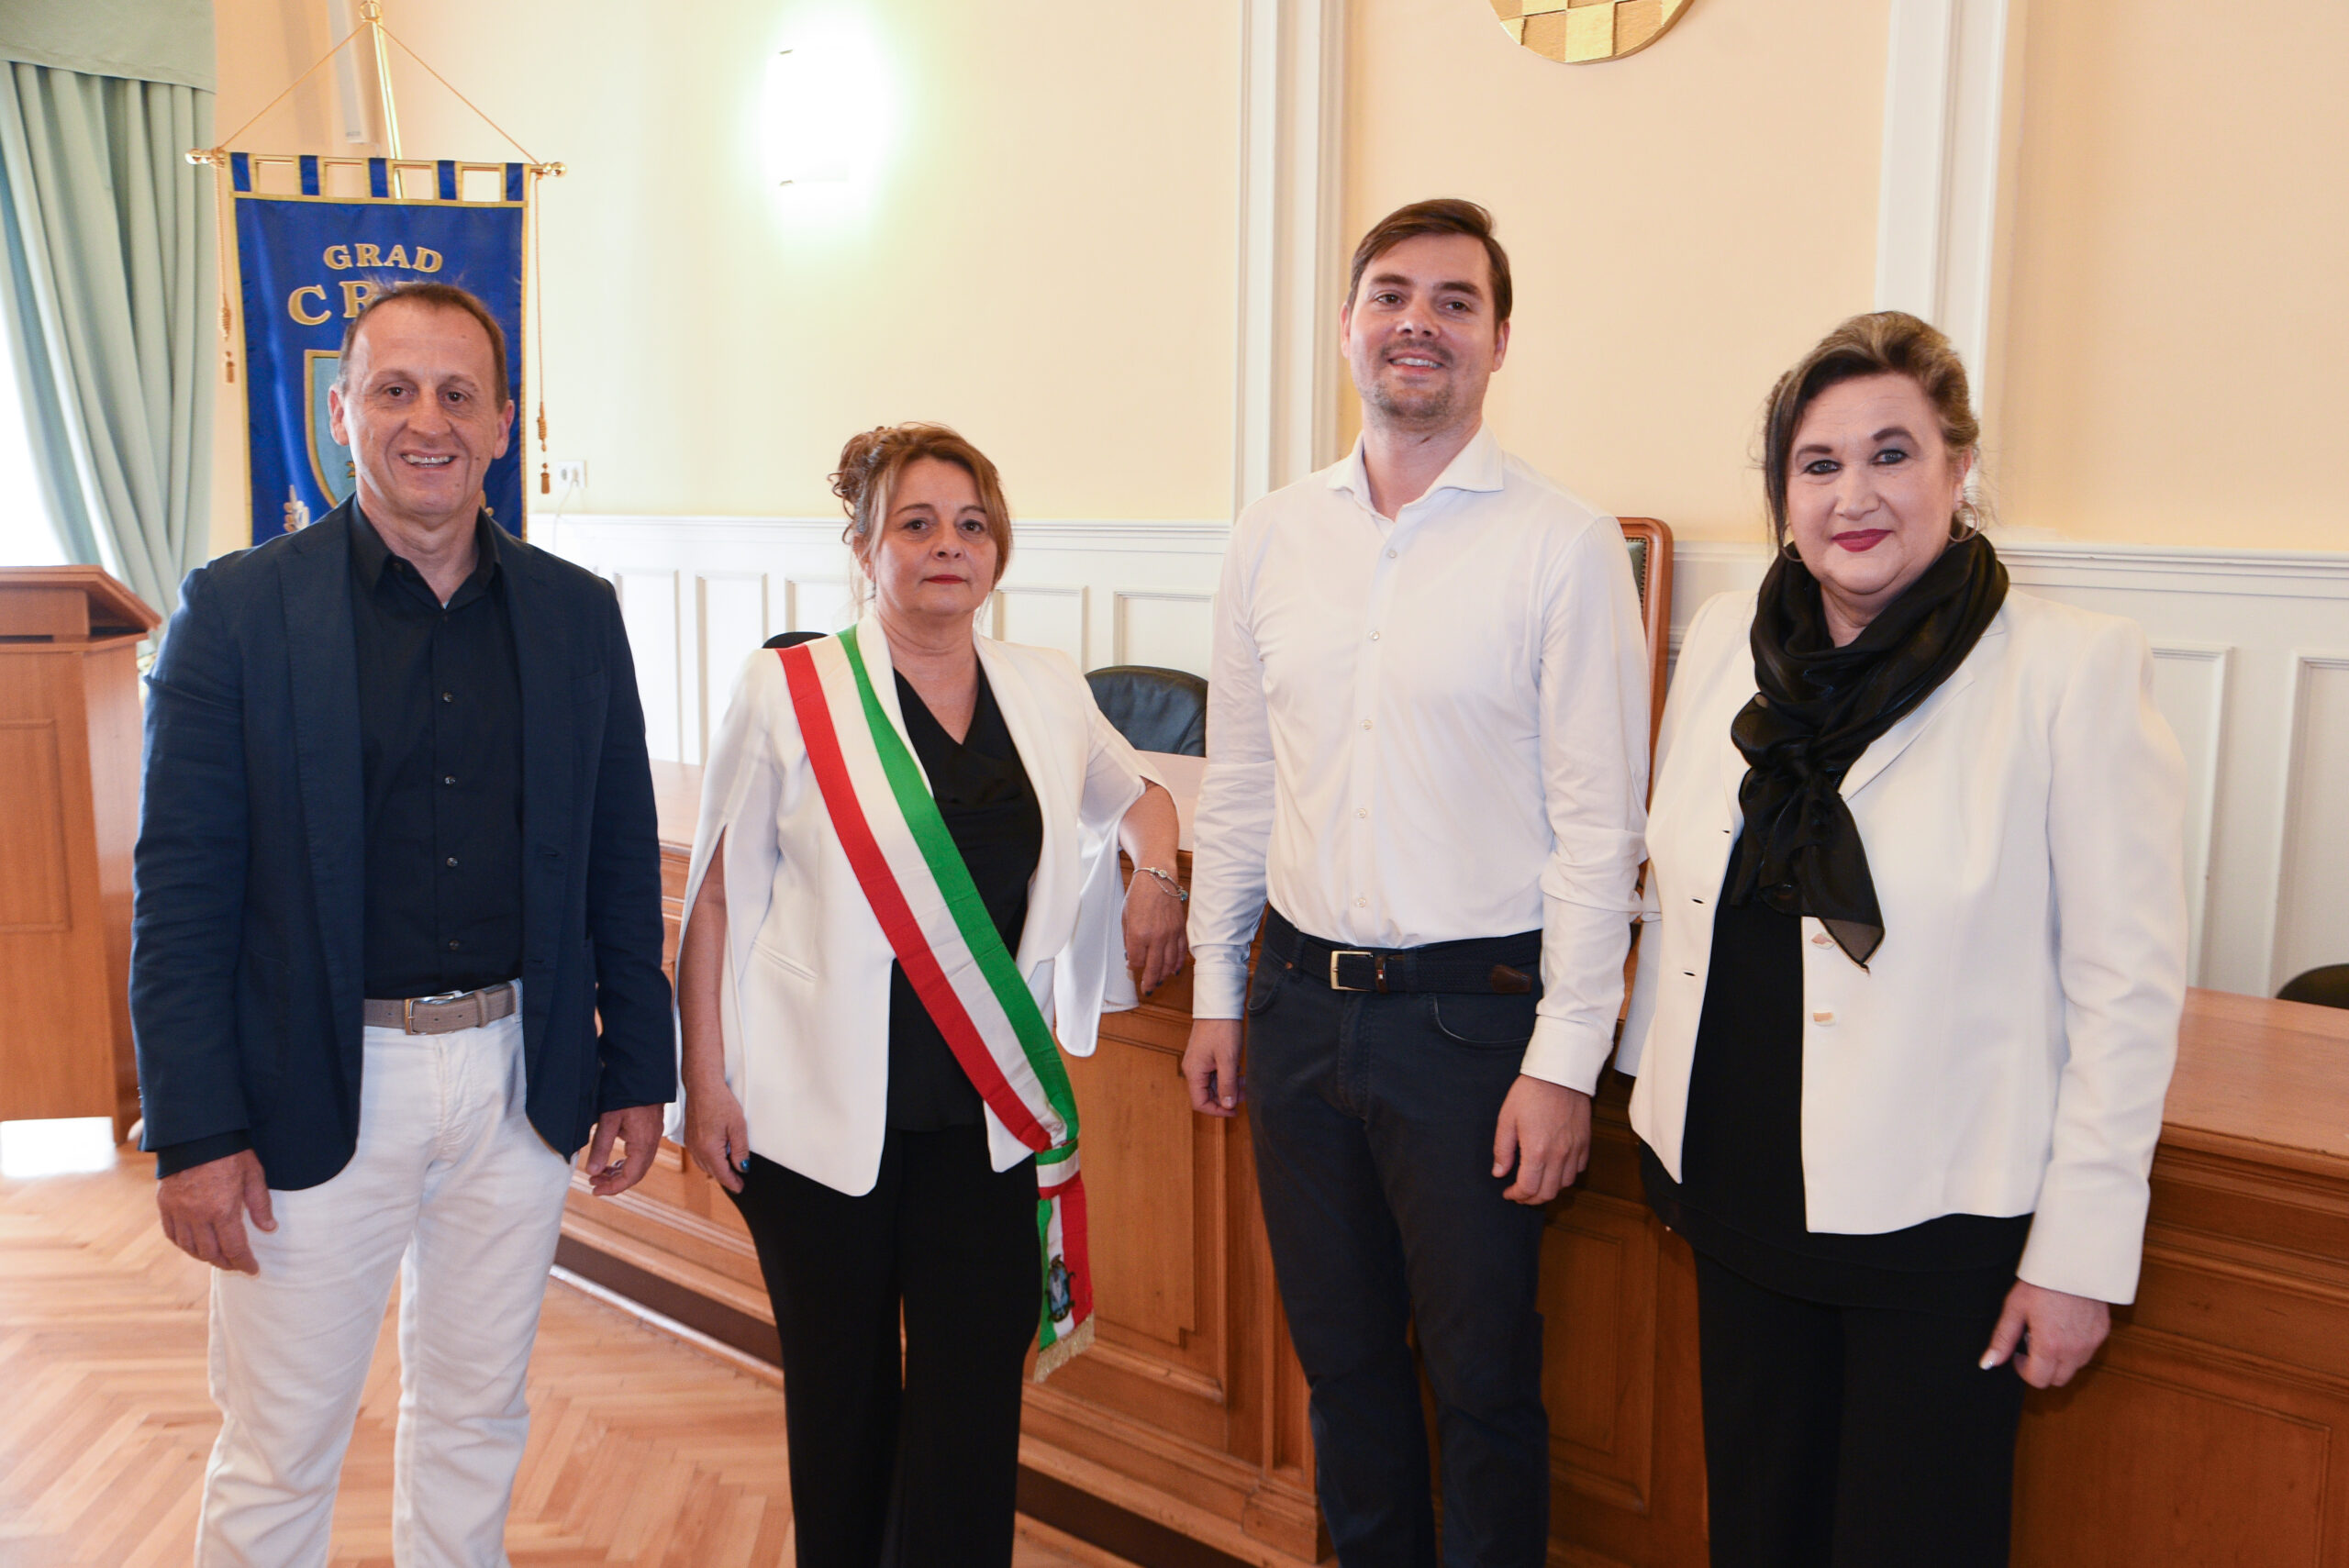 Susret predstavnika Cresa i Comacchia - Emanuele Mari, Maura Tomasi, Marin Gregorović, i Rosanna Cinti